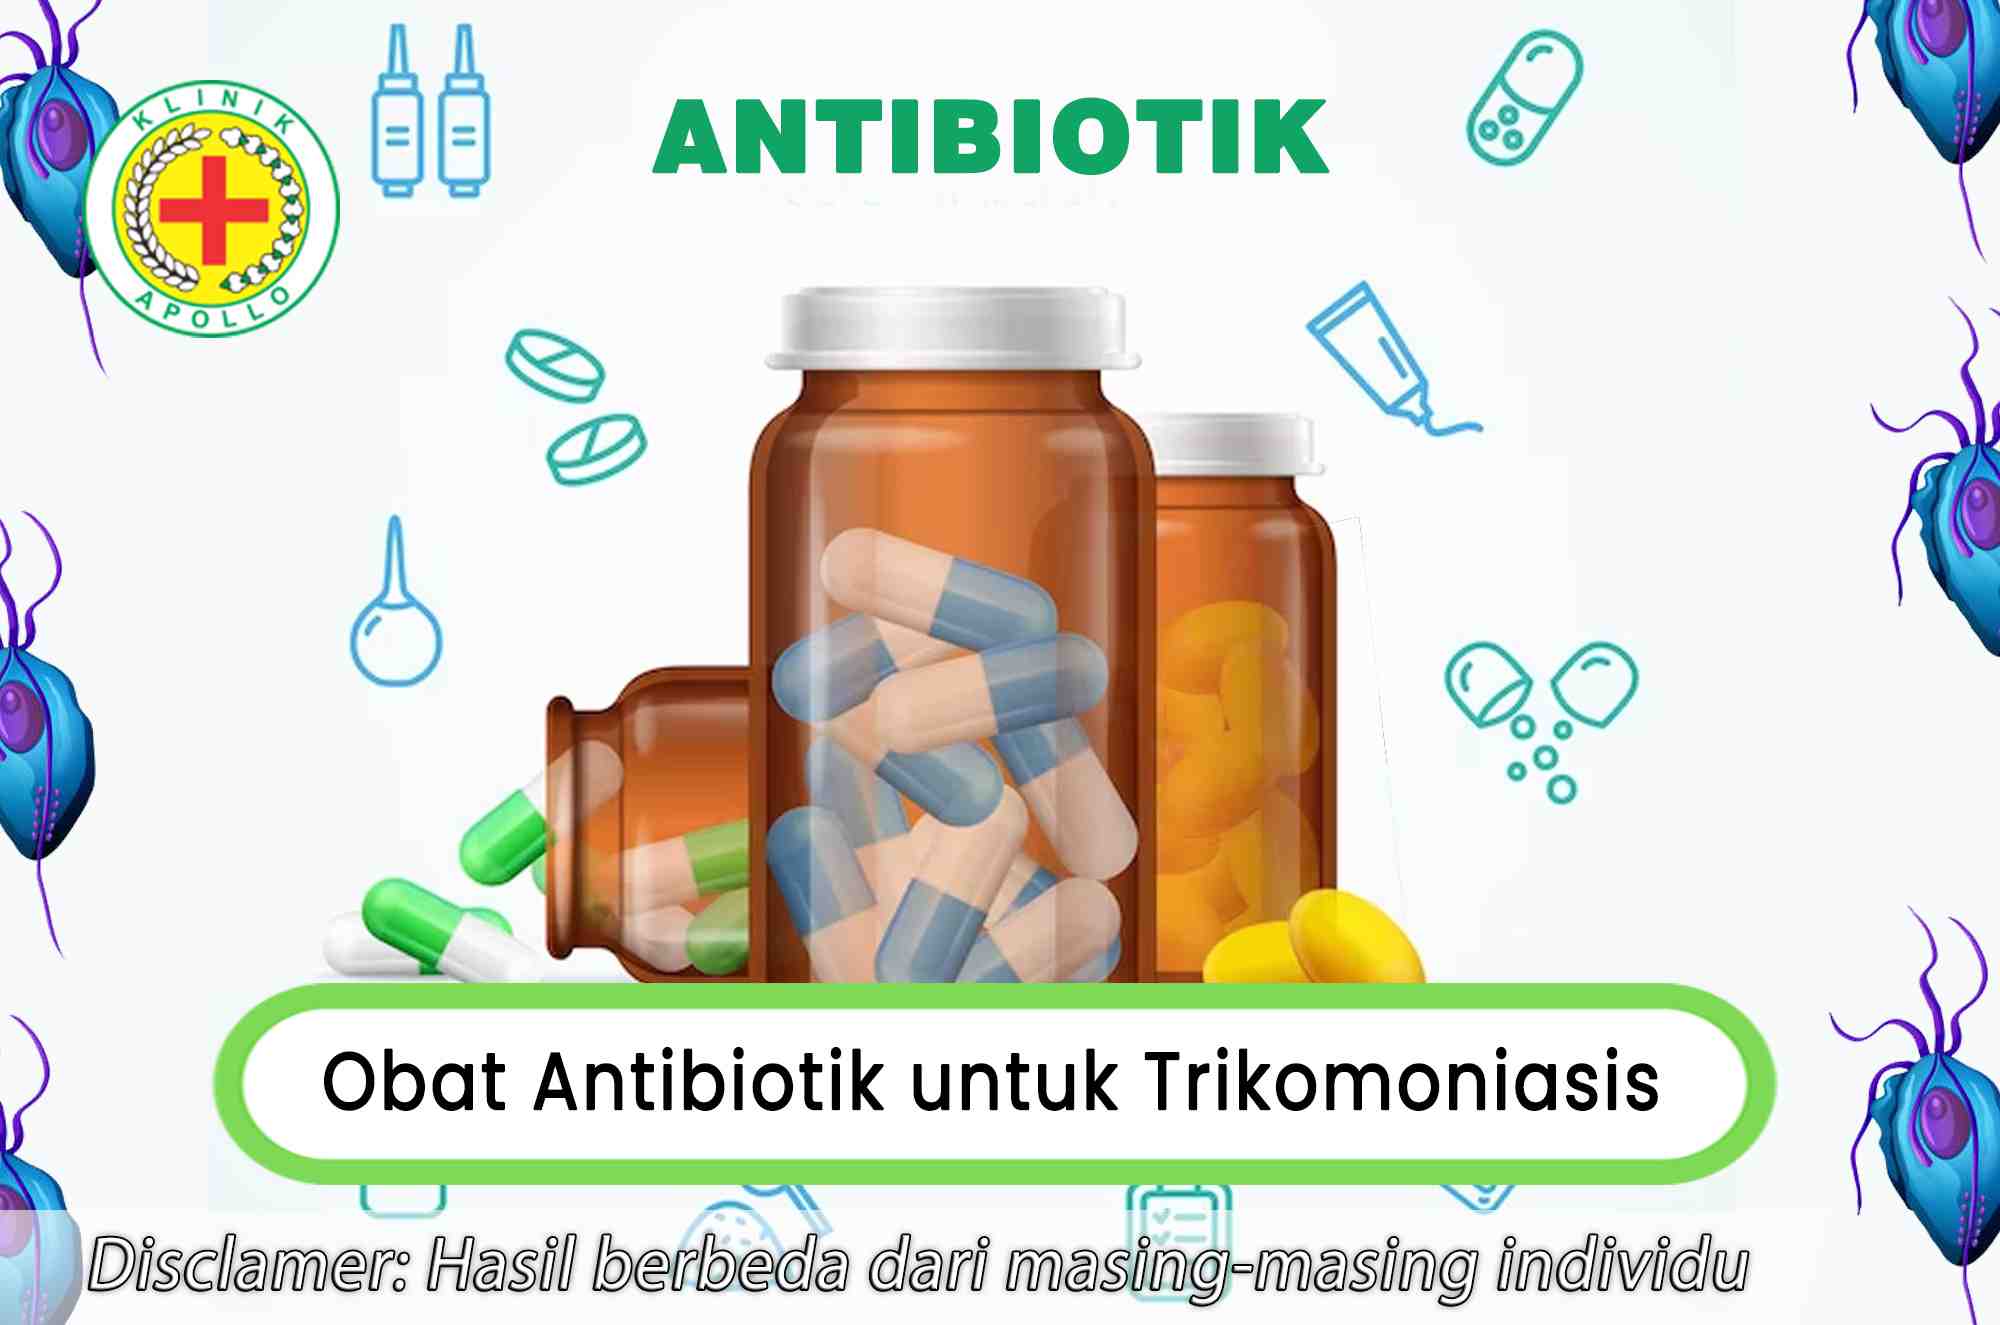 Untuk mendapatkan obat antibiotik untuk trikomoniasis terampuh hubungi dokter ahli.